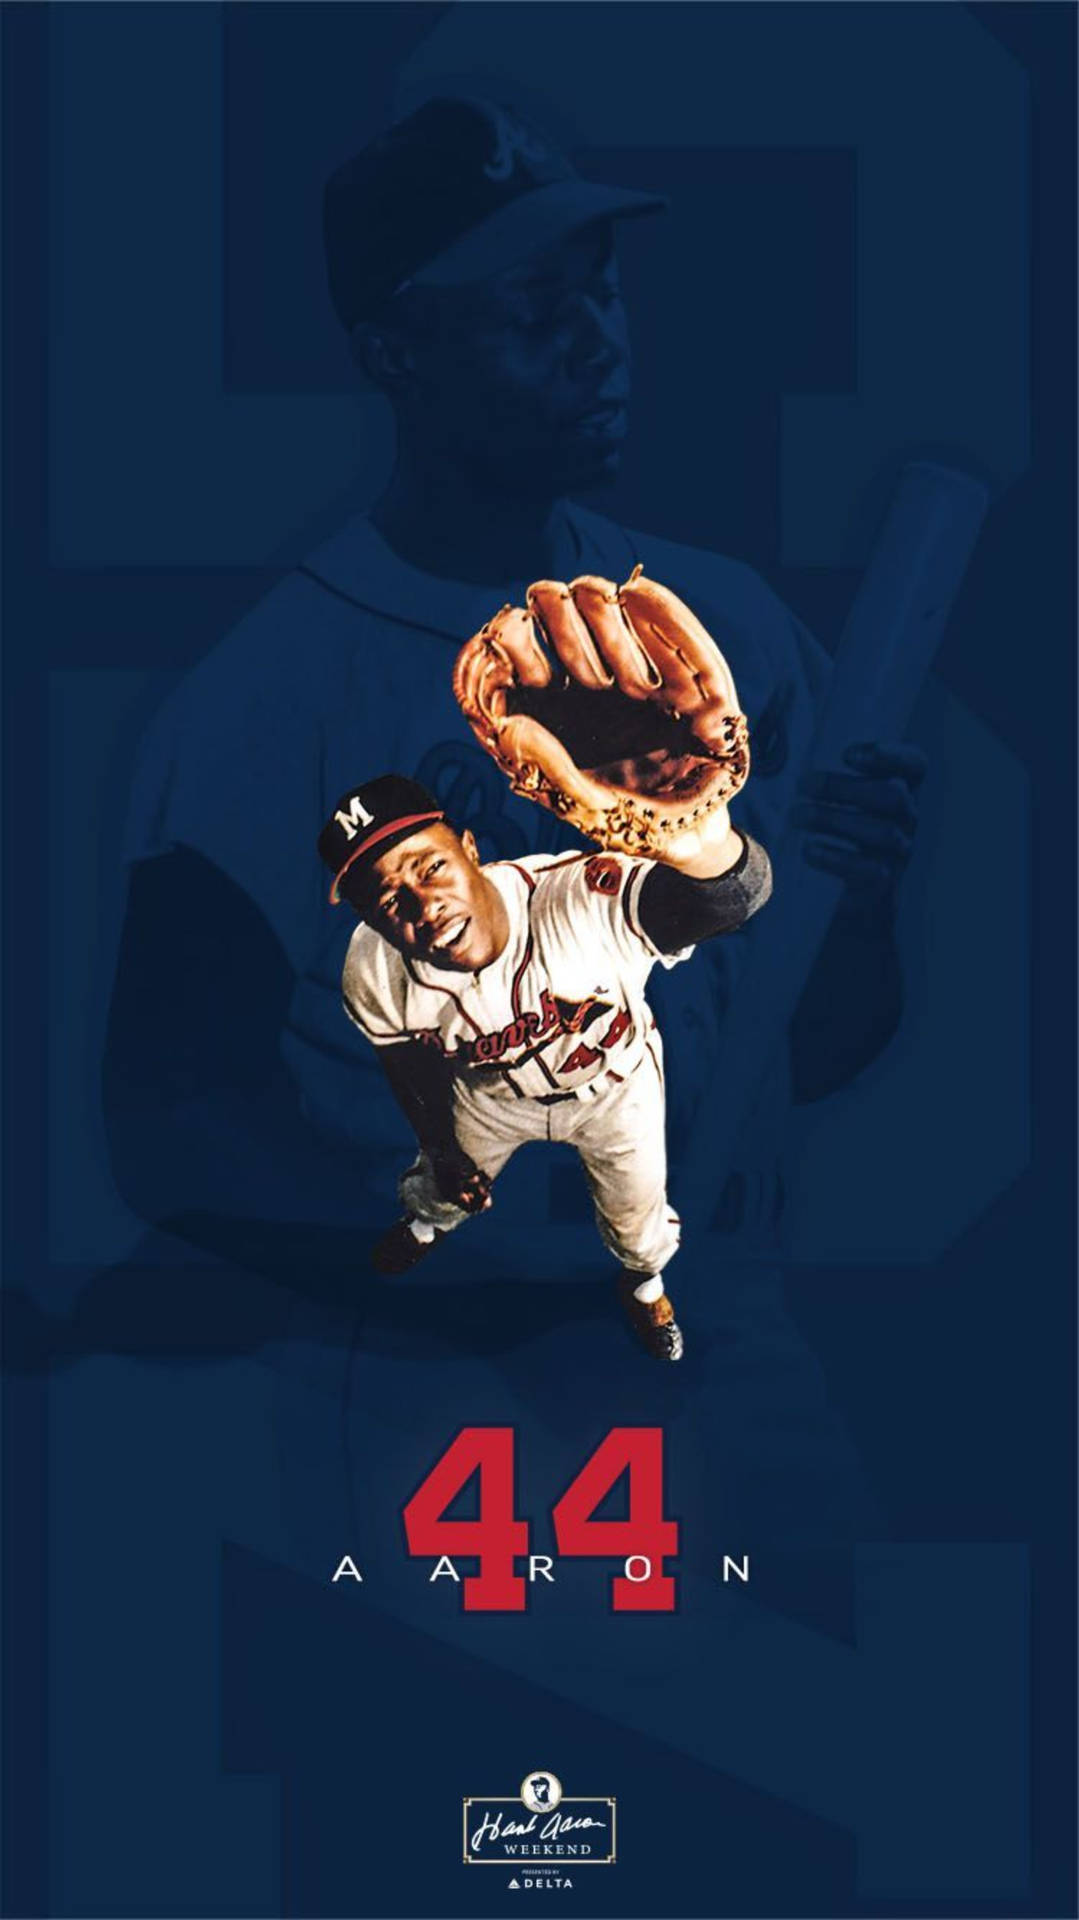 Hank Aaron 44 Baseball Player Background